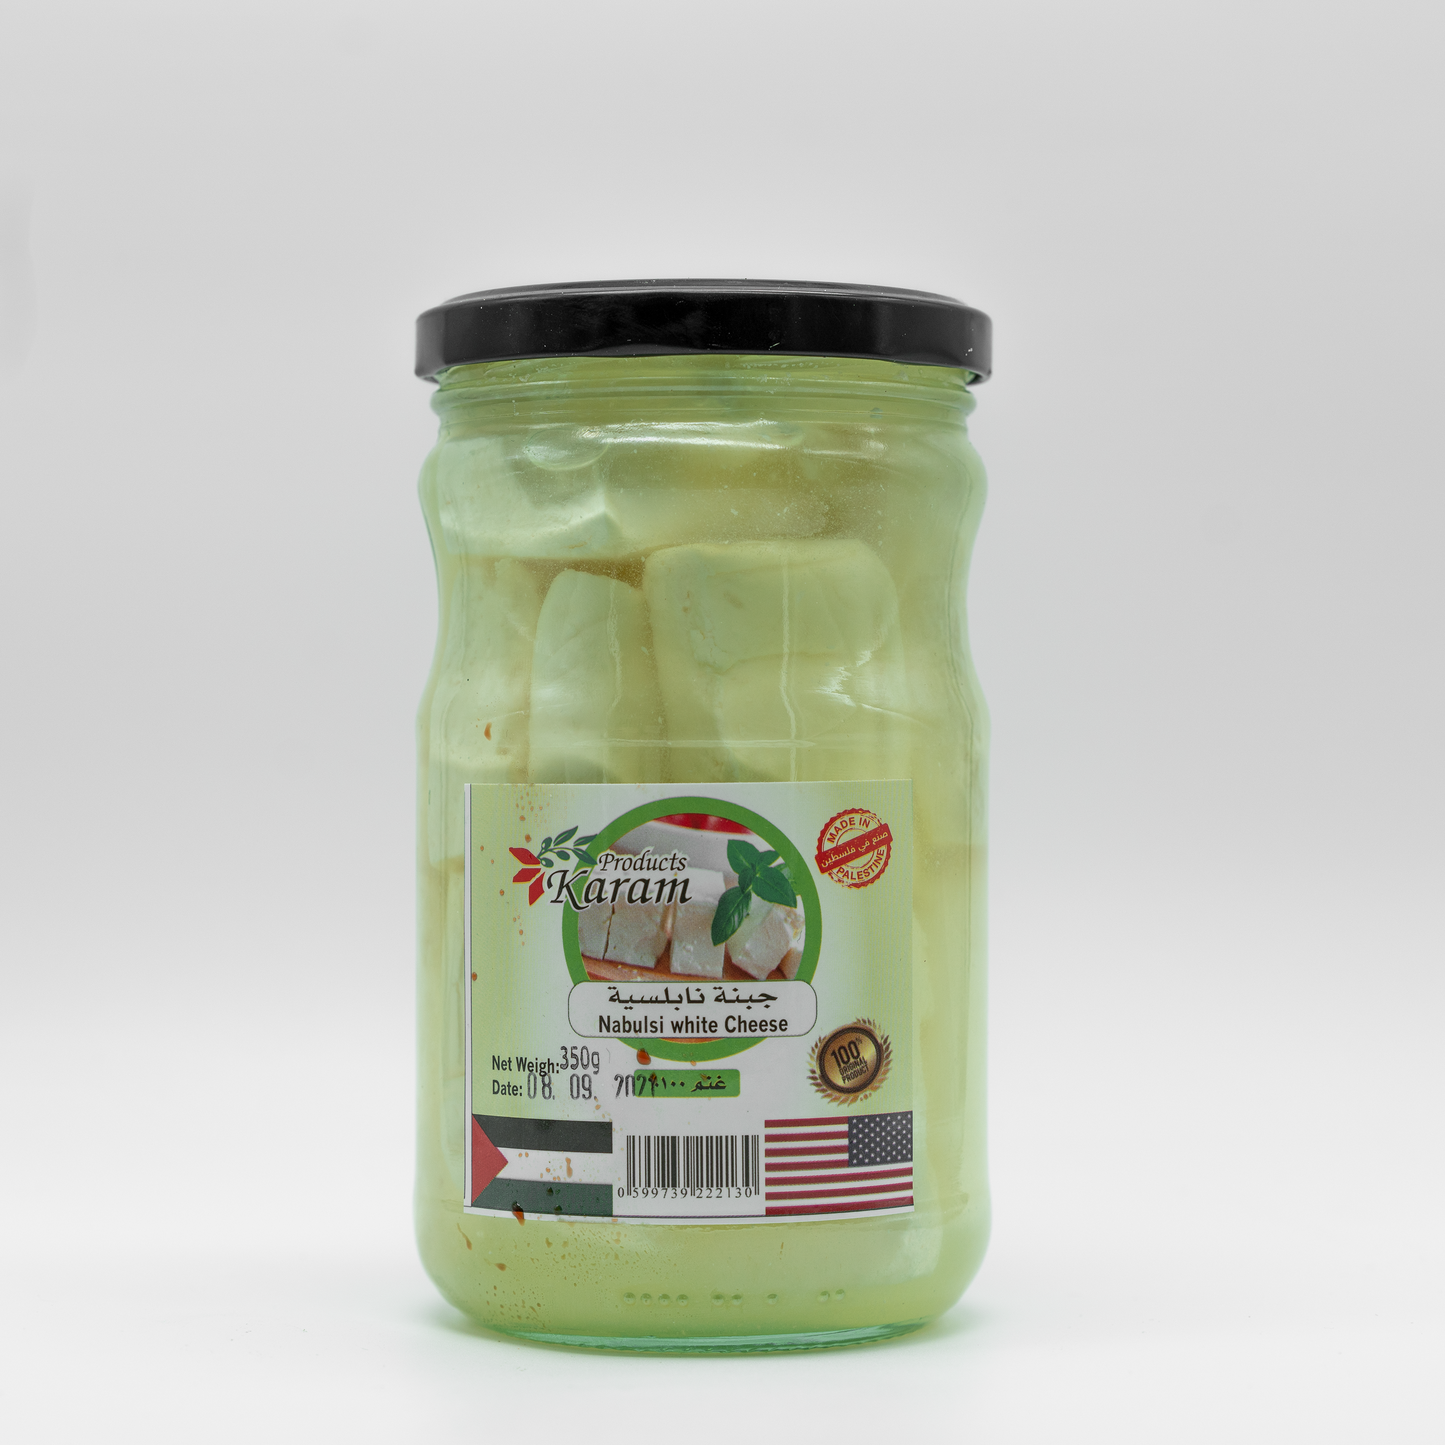 Karam Product Nabulsi white Cheese, 0.8 lb